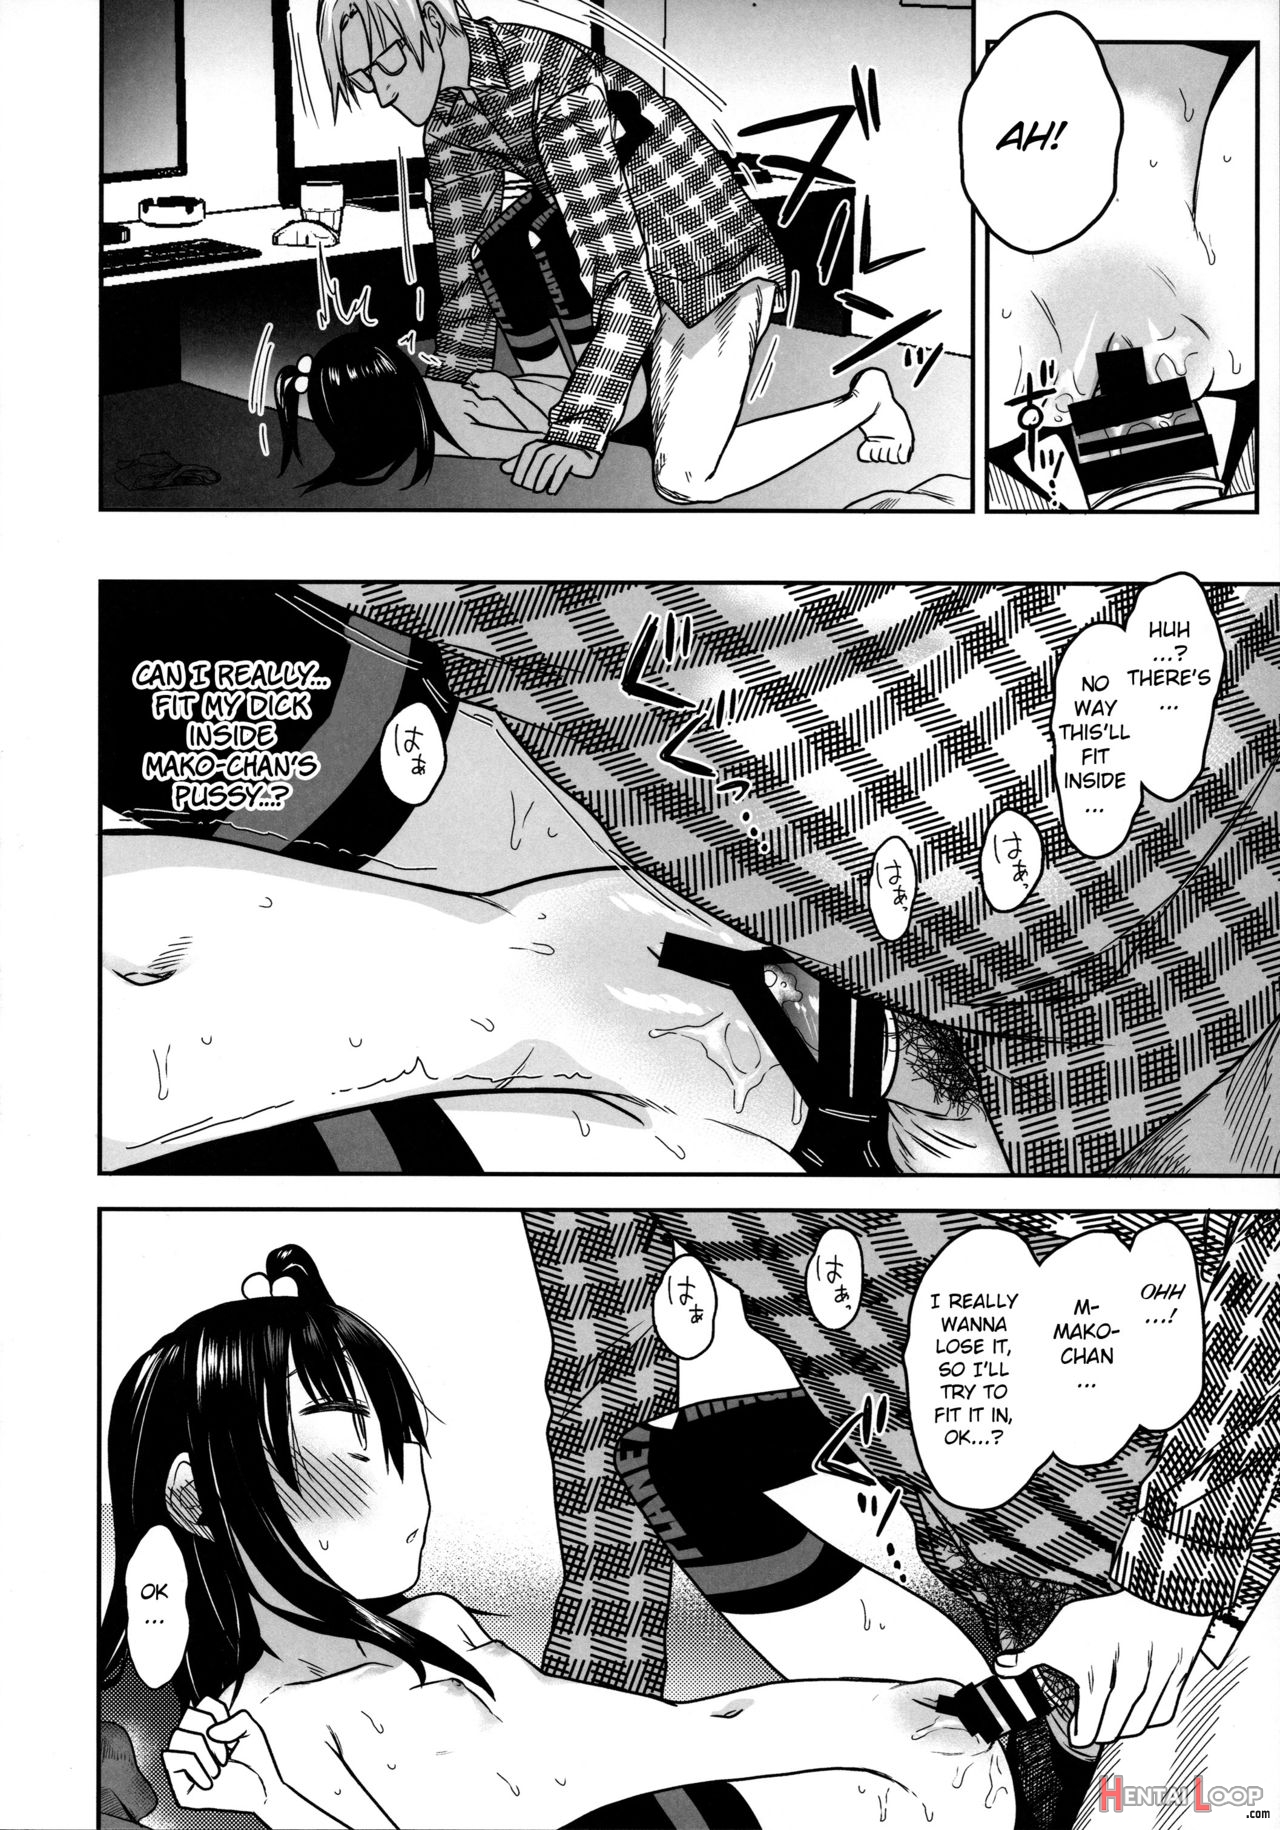 Tonari No Mako-chan Season 2 Vol. 2 page 26